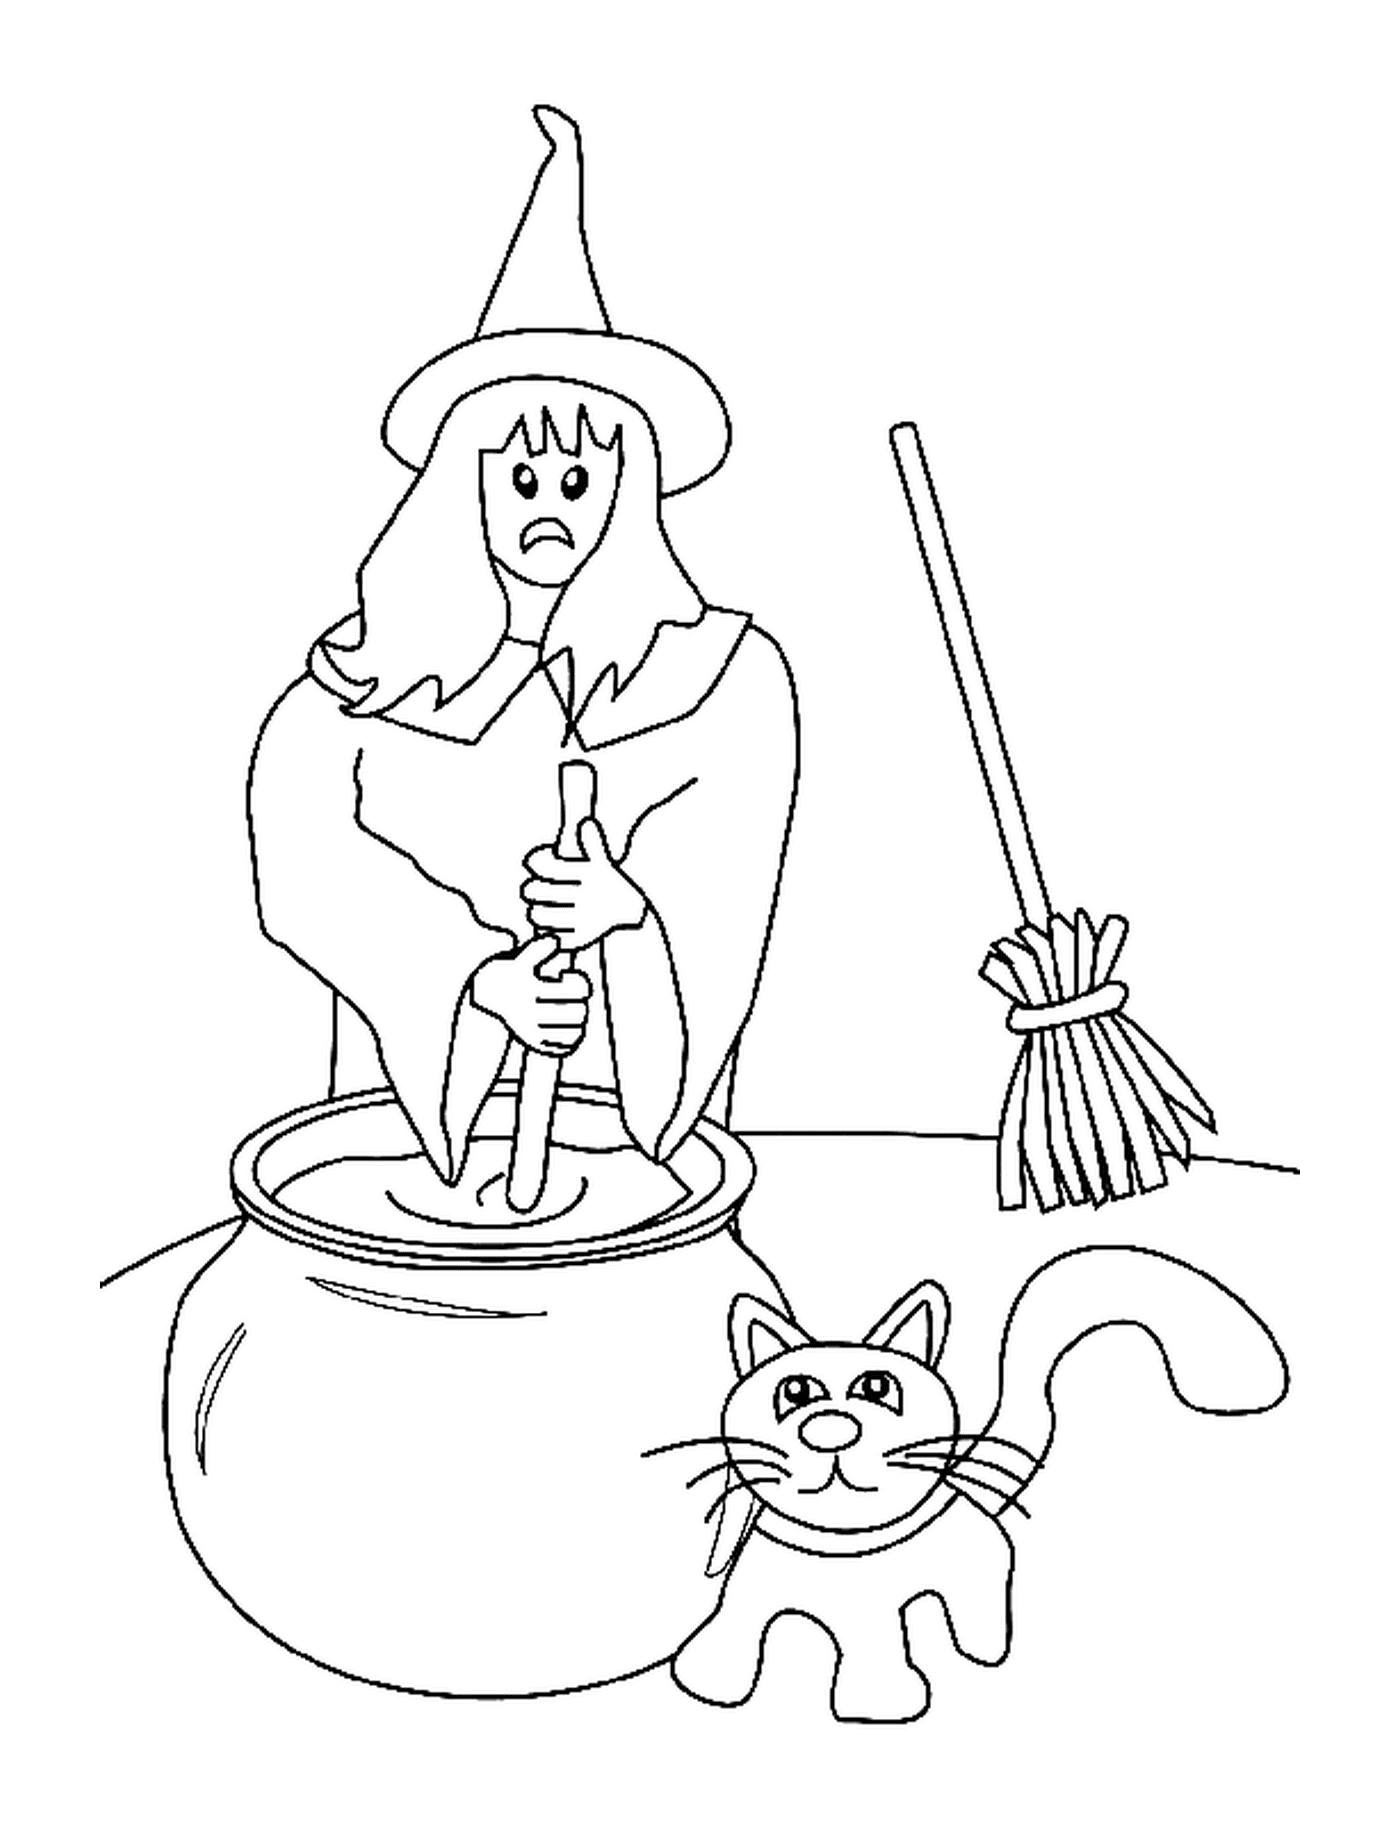  bruxa, vassoura, vaso e gato 